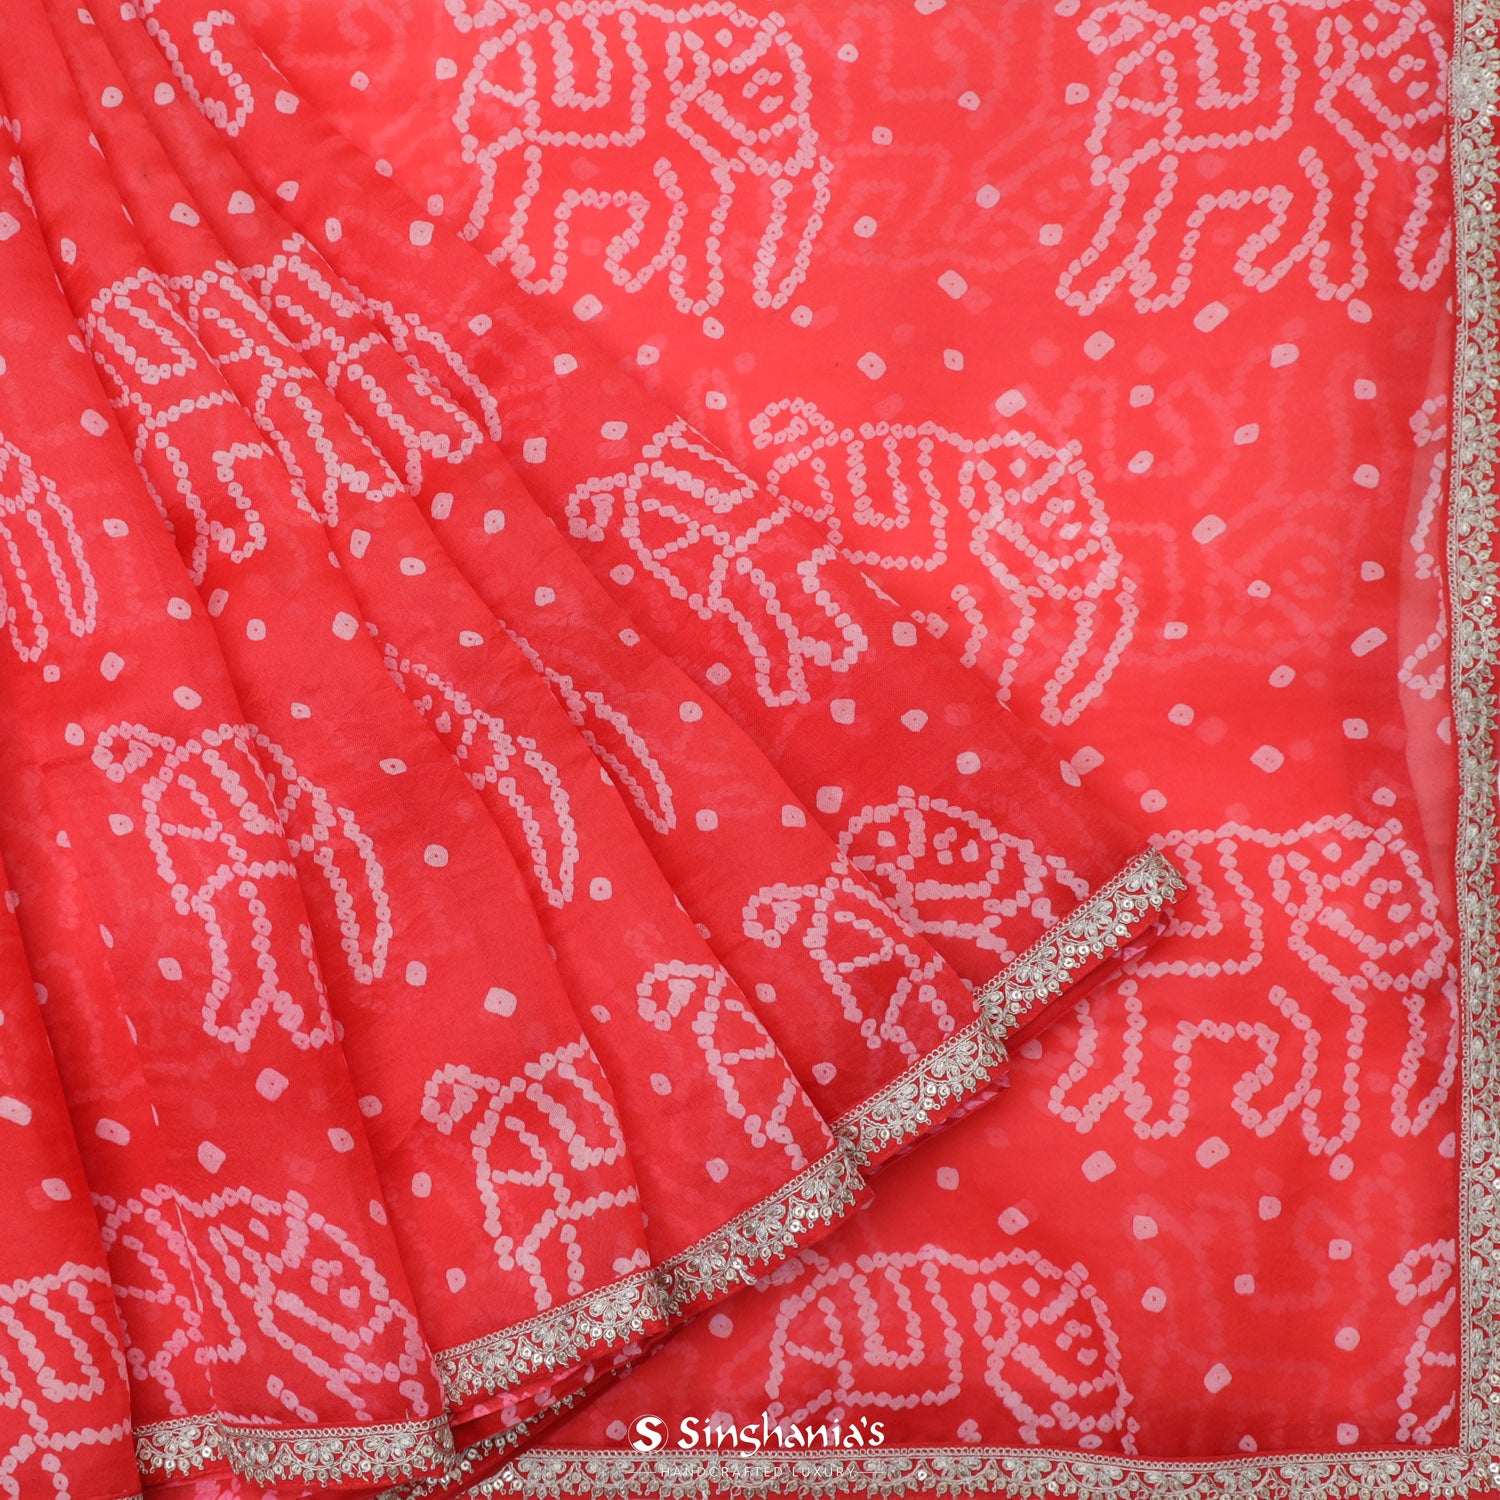 Reddish Orange Organza Saree With Bandhani Pattern